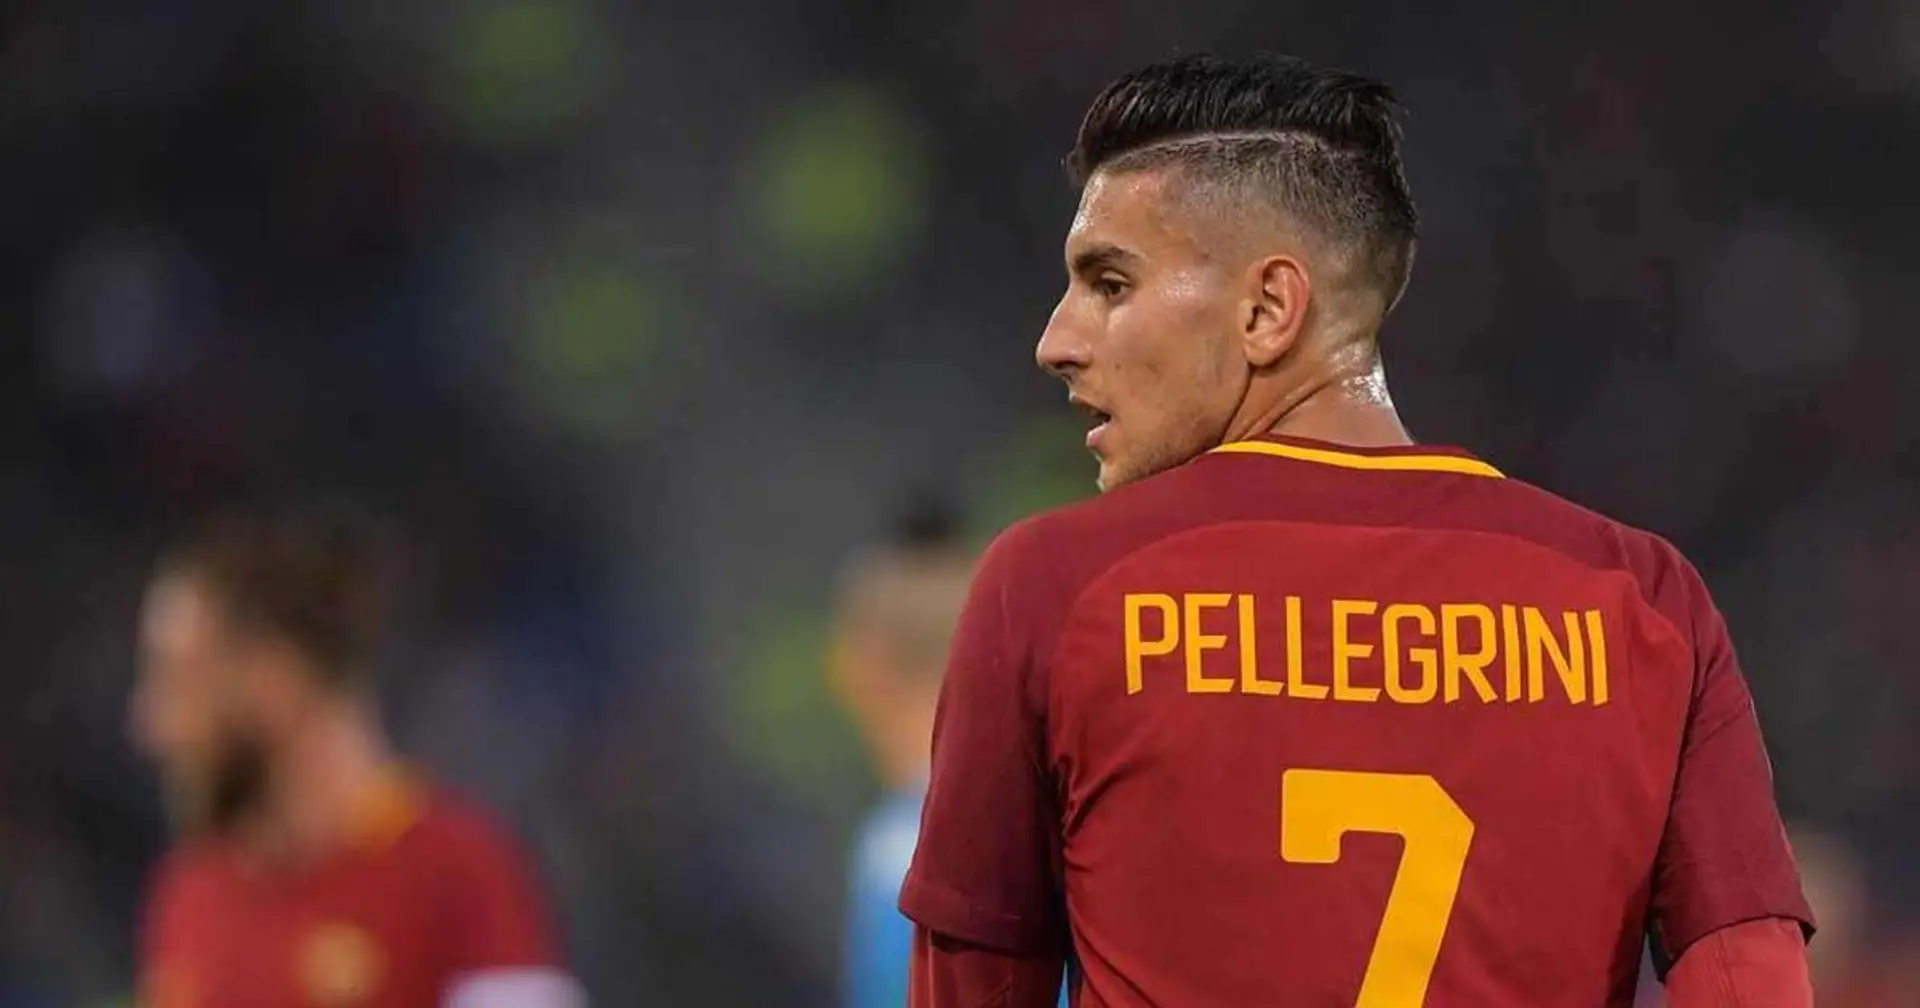 La Roma pousse Pellegrini vers la sortie, le joueur ne voudrait pas quitter son club pour le PSG 